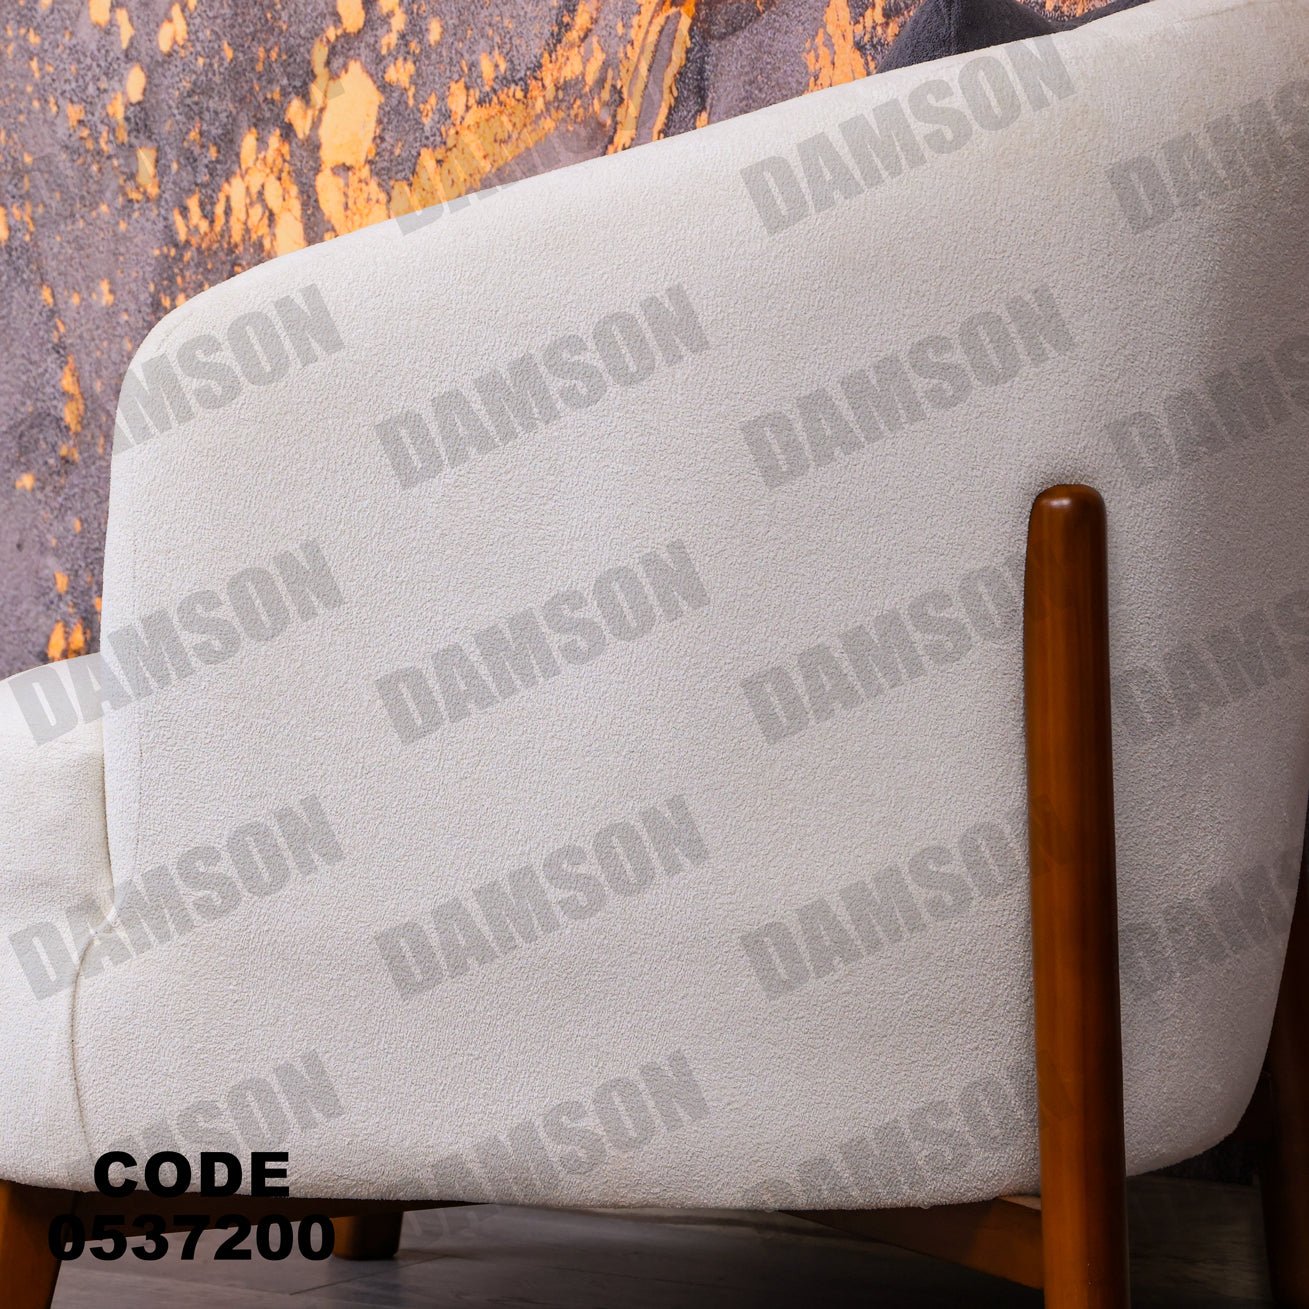 فوتية 1-372 - Damson Furnitureفوتية 1-372